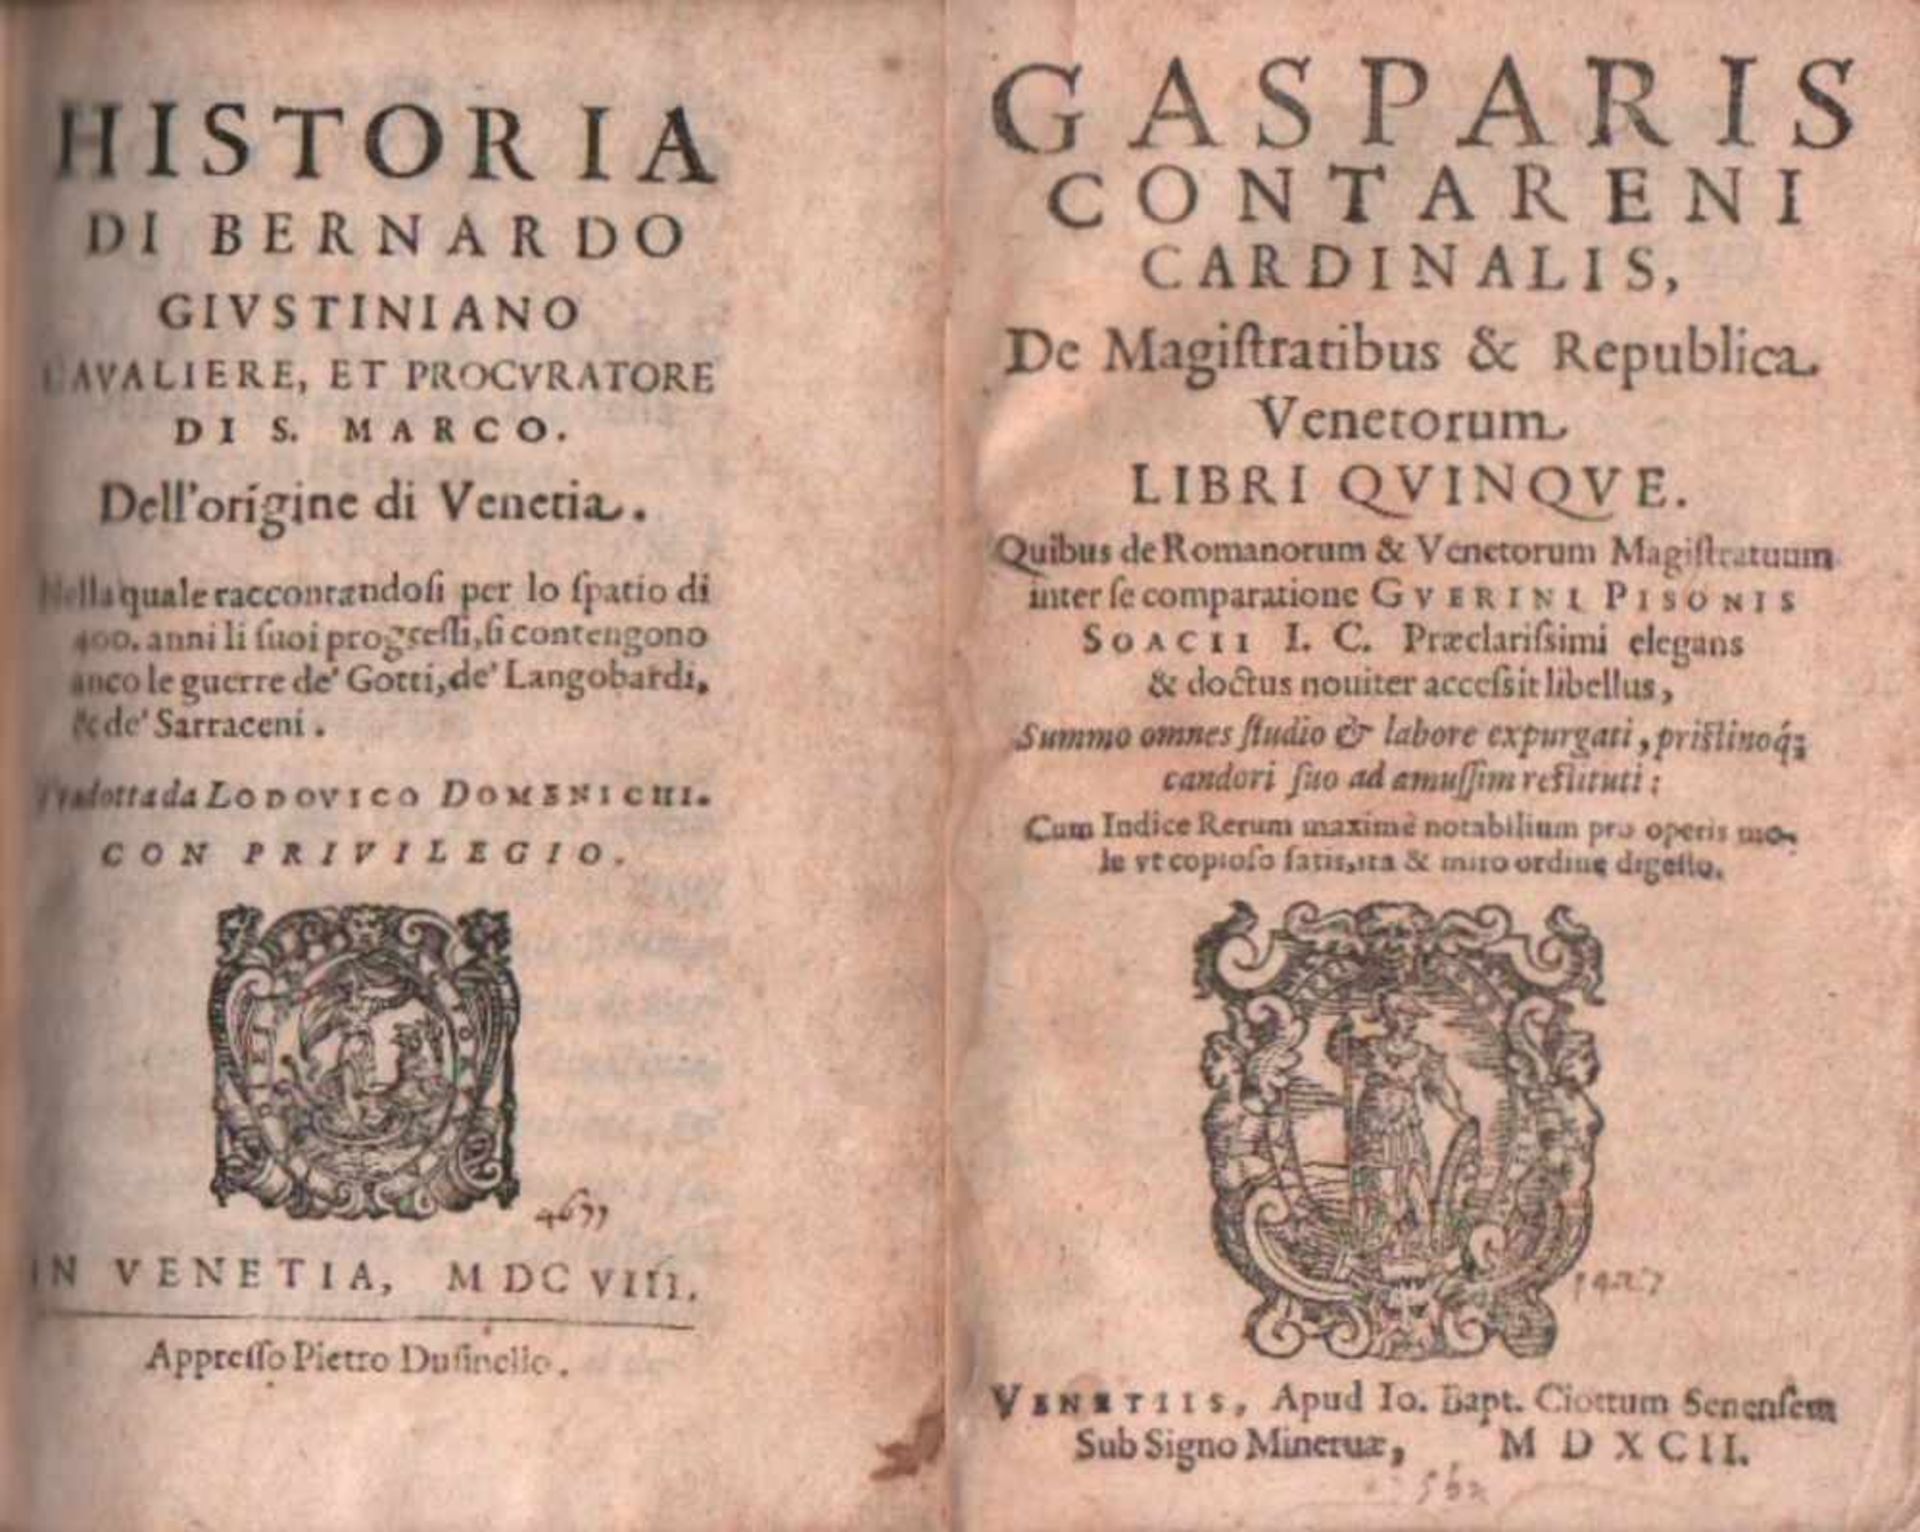 Domenichi, Lodovico.(Übersetzer) Historia di Bernardo Giustiniano cavaliere, et procuratore di S.